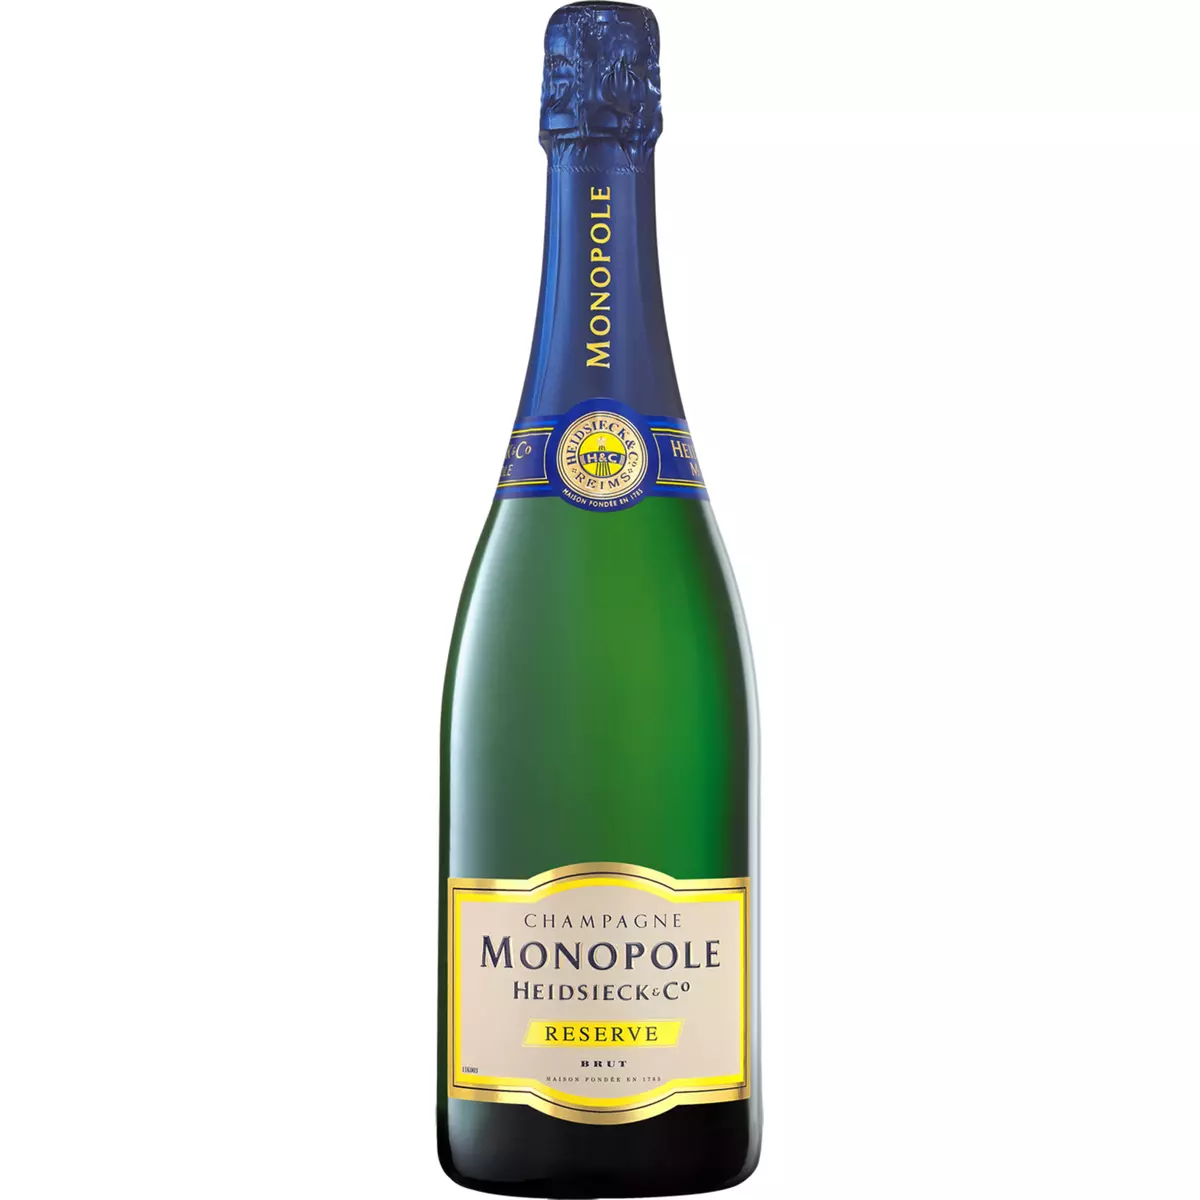 HEIDSIECK & CO MONOPOLE AOP Champagne Monopole brut 75cl